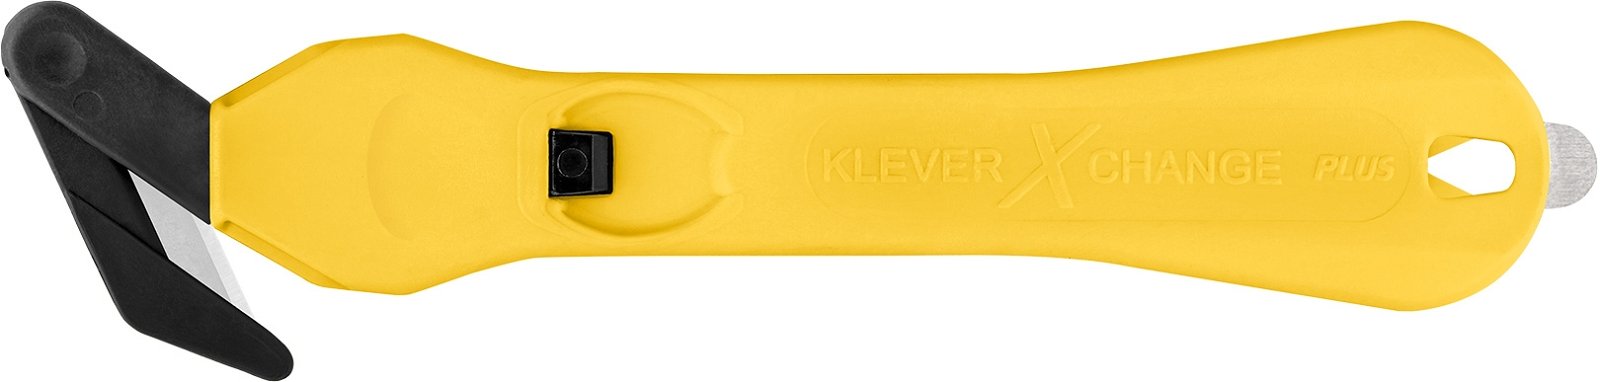 Klever® Sicherheitsmesser KLEVER XCHANGE PLUS 30, weiß